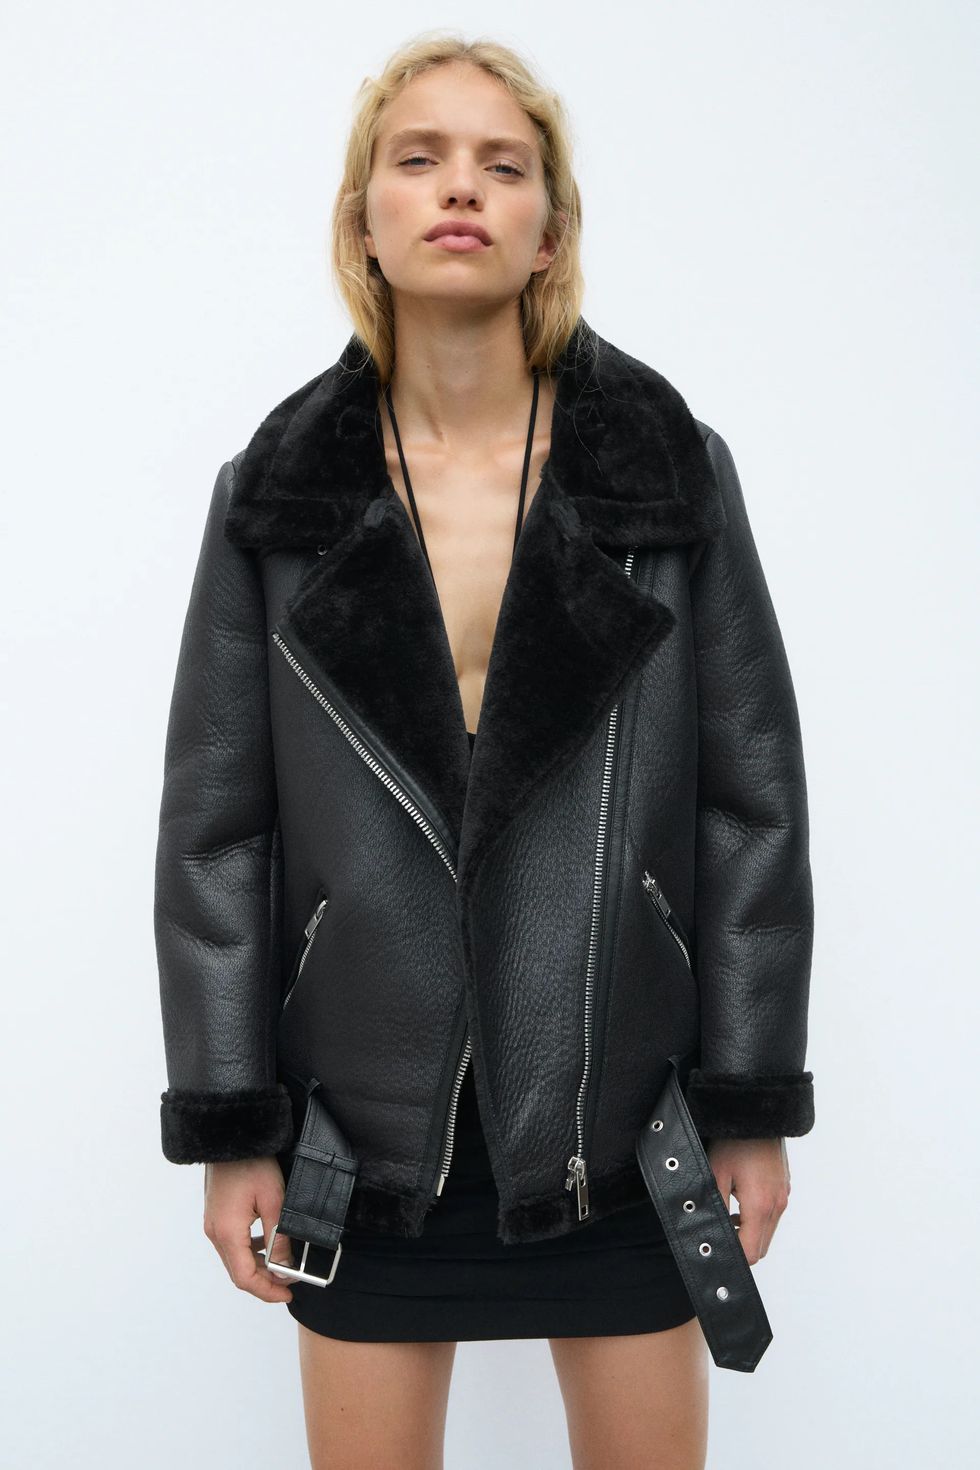 Clasificar saltar métrico Zara saca su abrigo chaquetón doble faz más vendido de todos los otoños